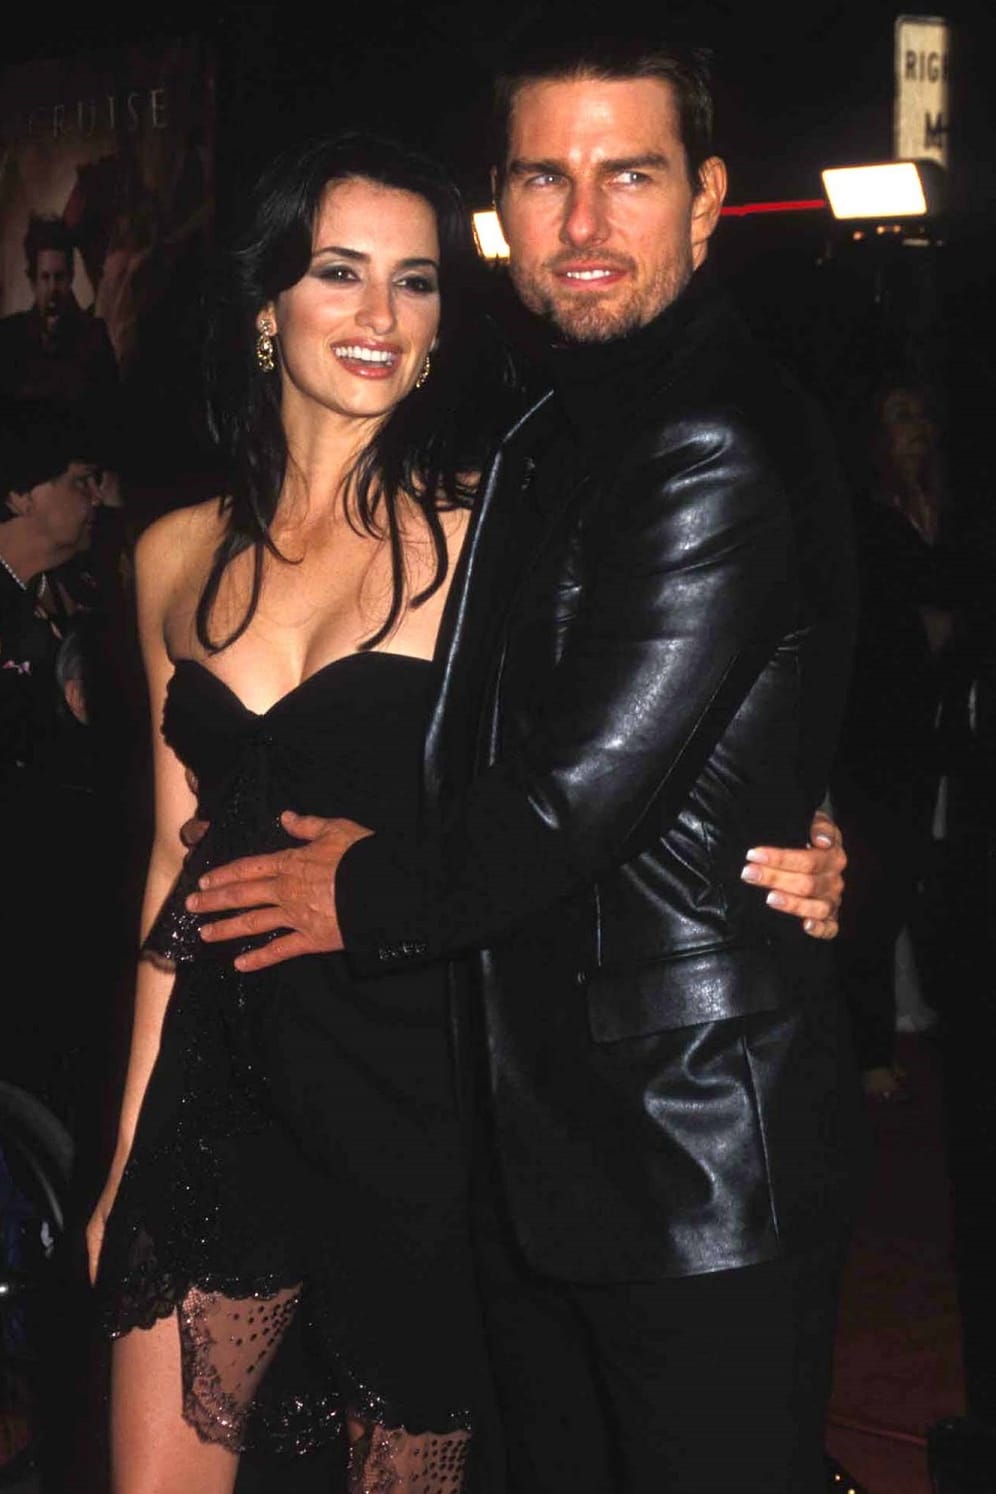 Penelopé Cruz und Tom Cruise: Bei den Dreharbeiten zu "Vanilla Sky" 2001 funkte es. Drei Jahre später gab das Schauspielerpaar die Trennung bekannt.